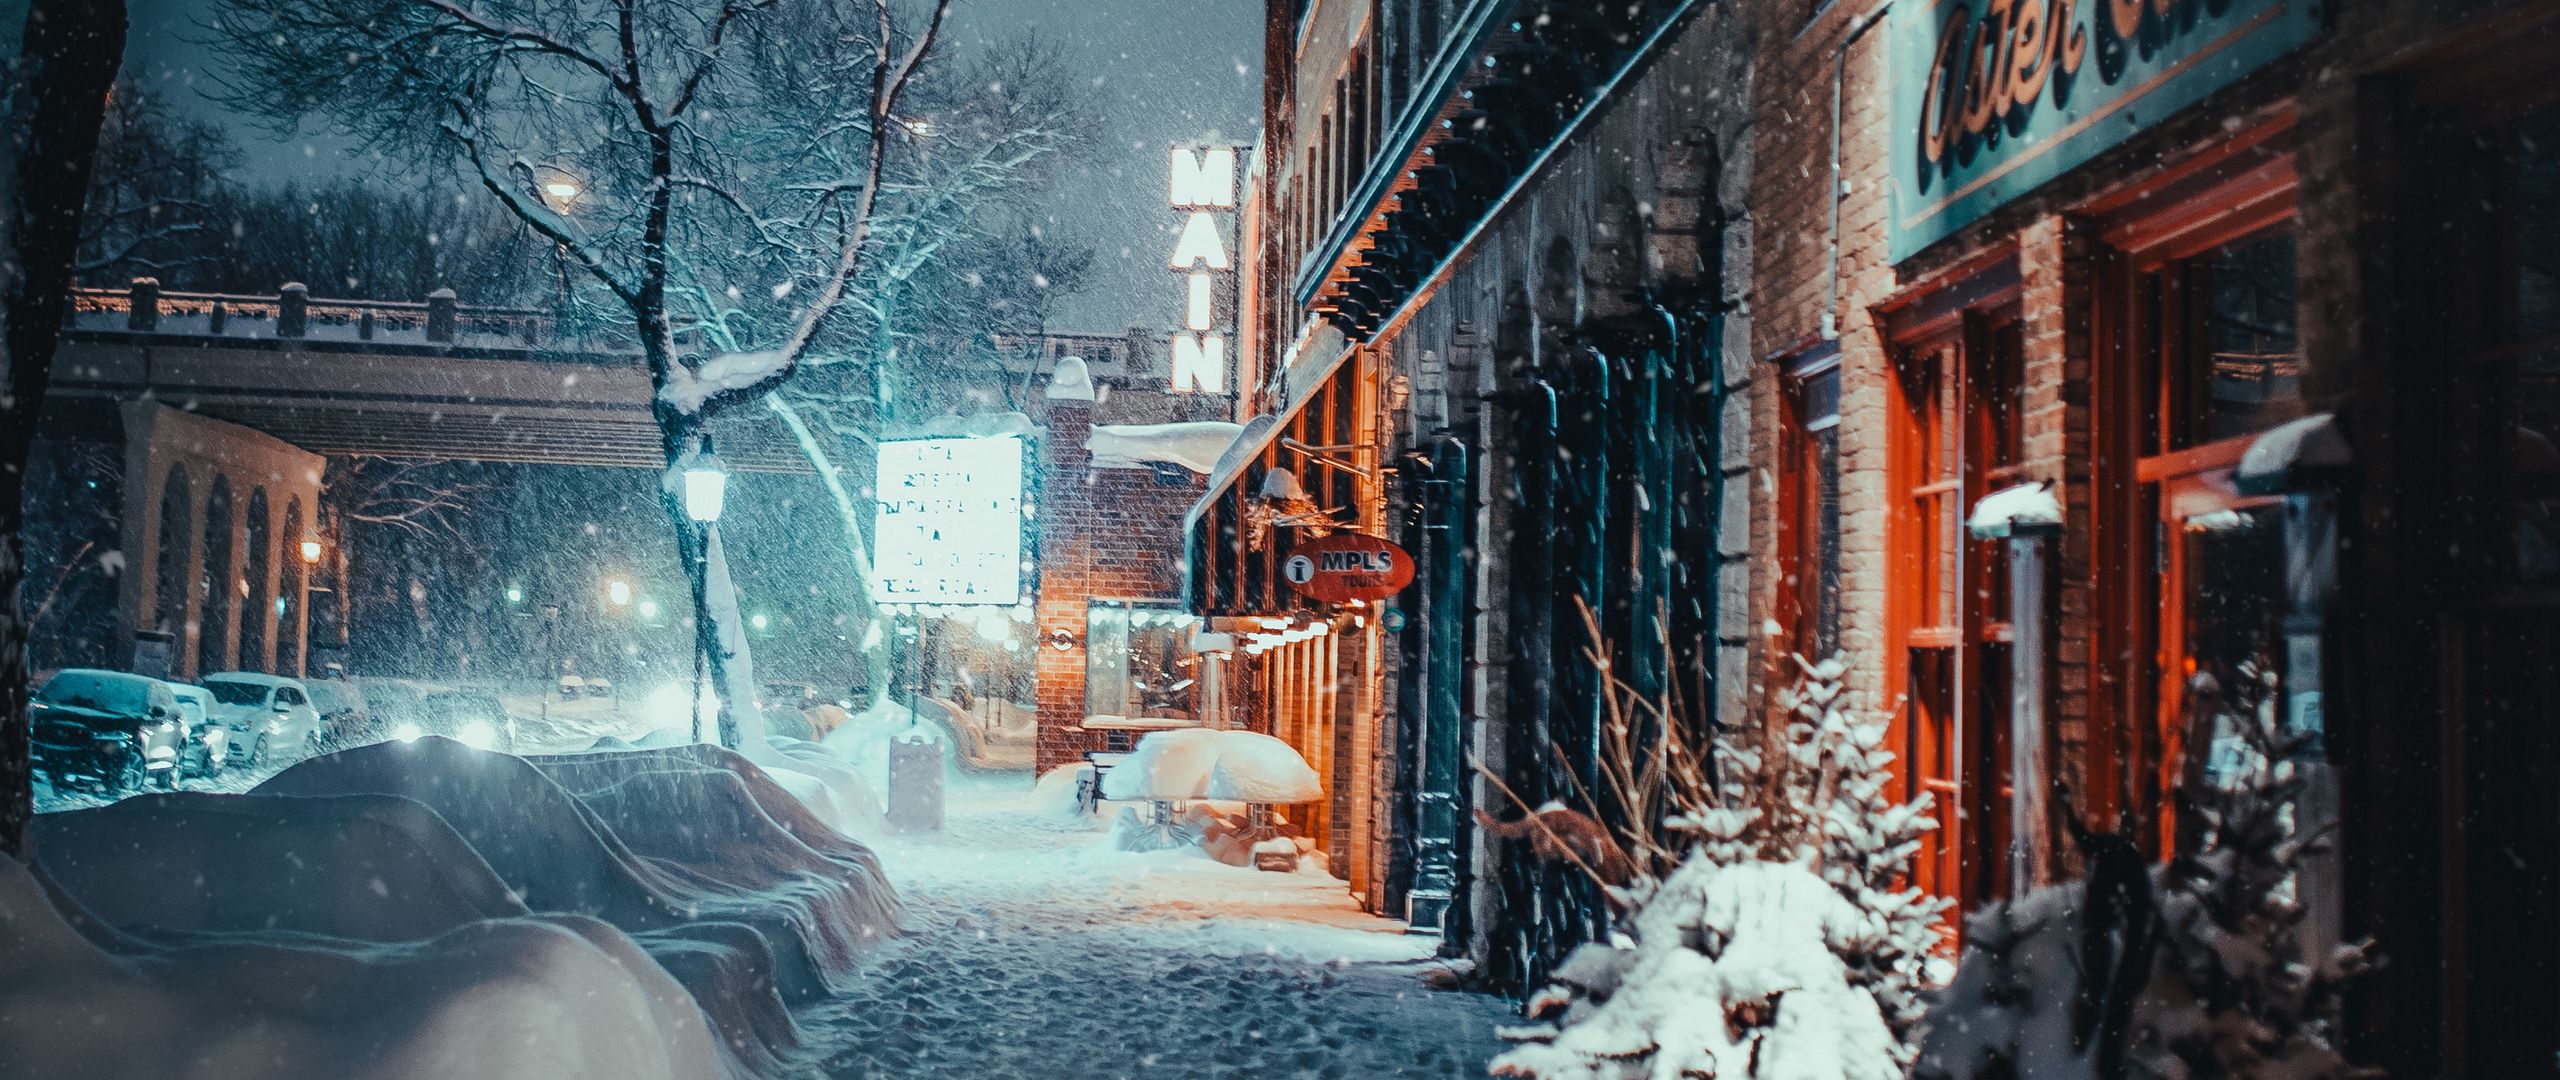 Download wallpaper 2560x1080 city, evening, snowfall, winter, street ...